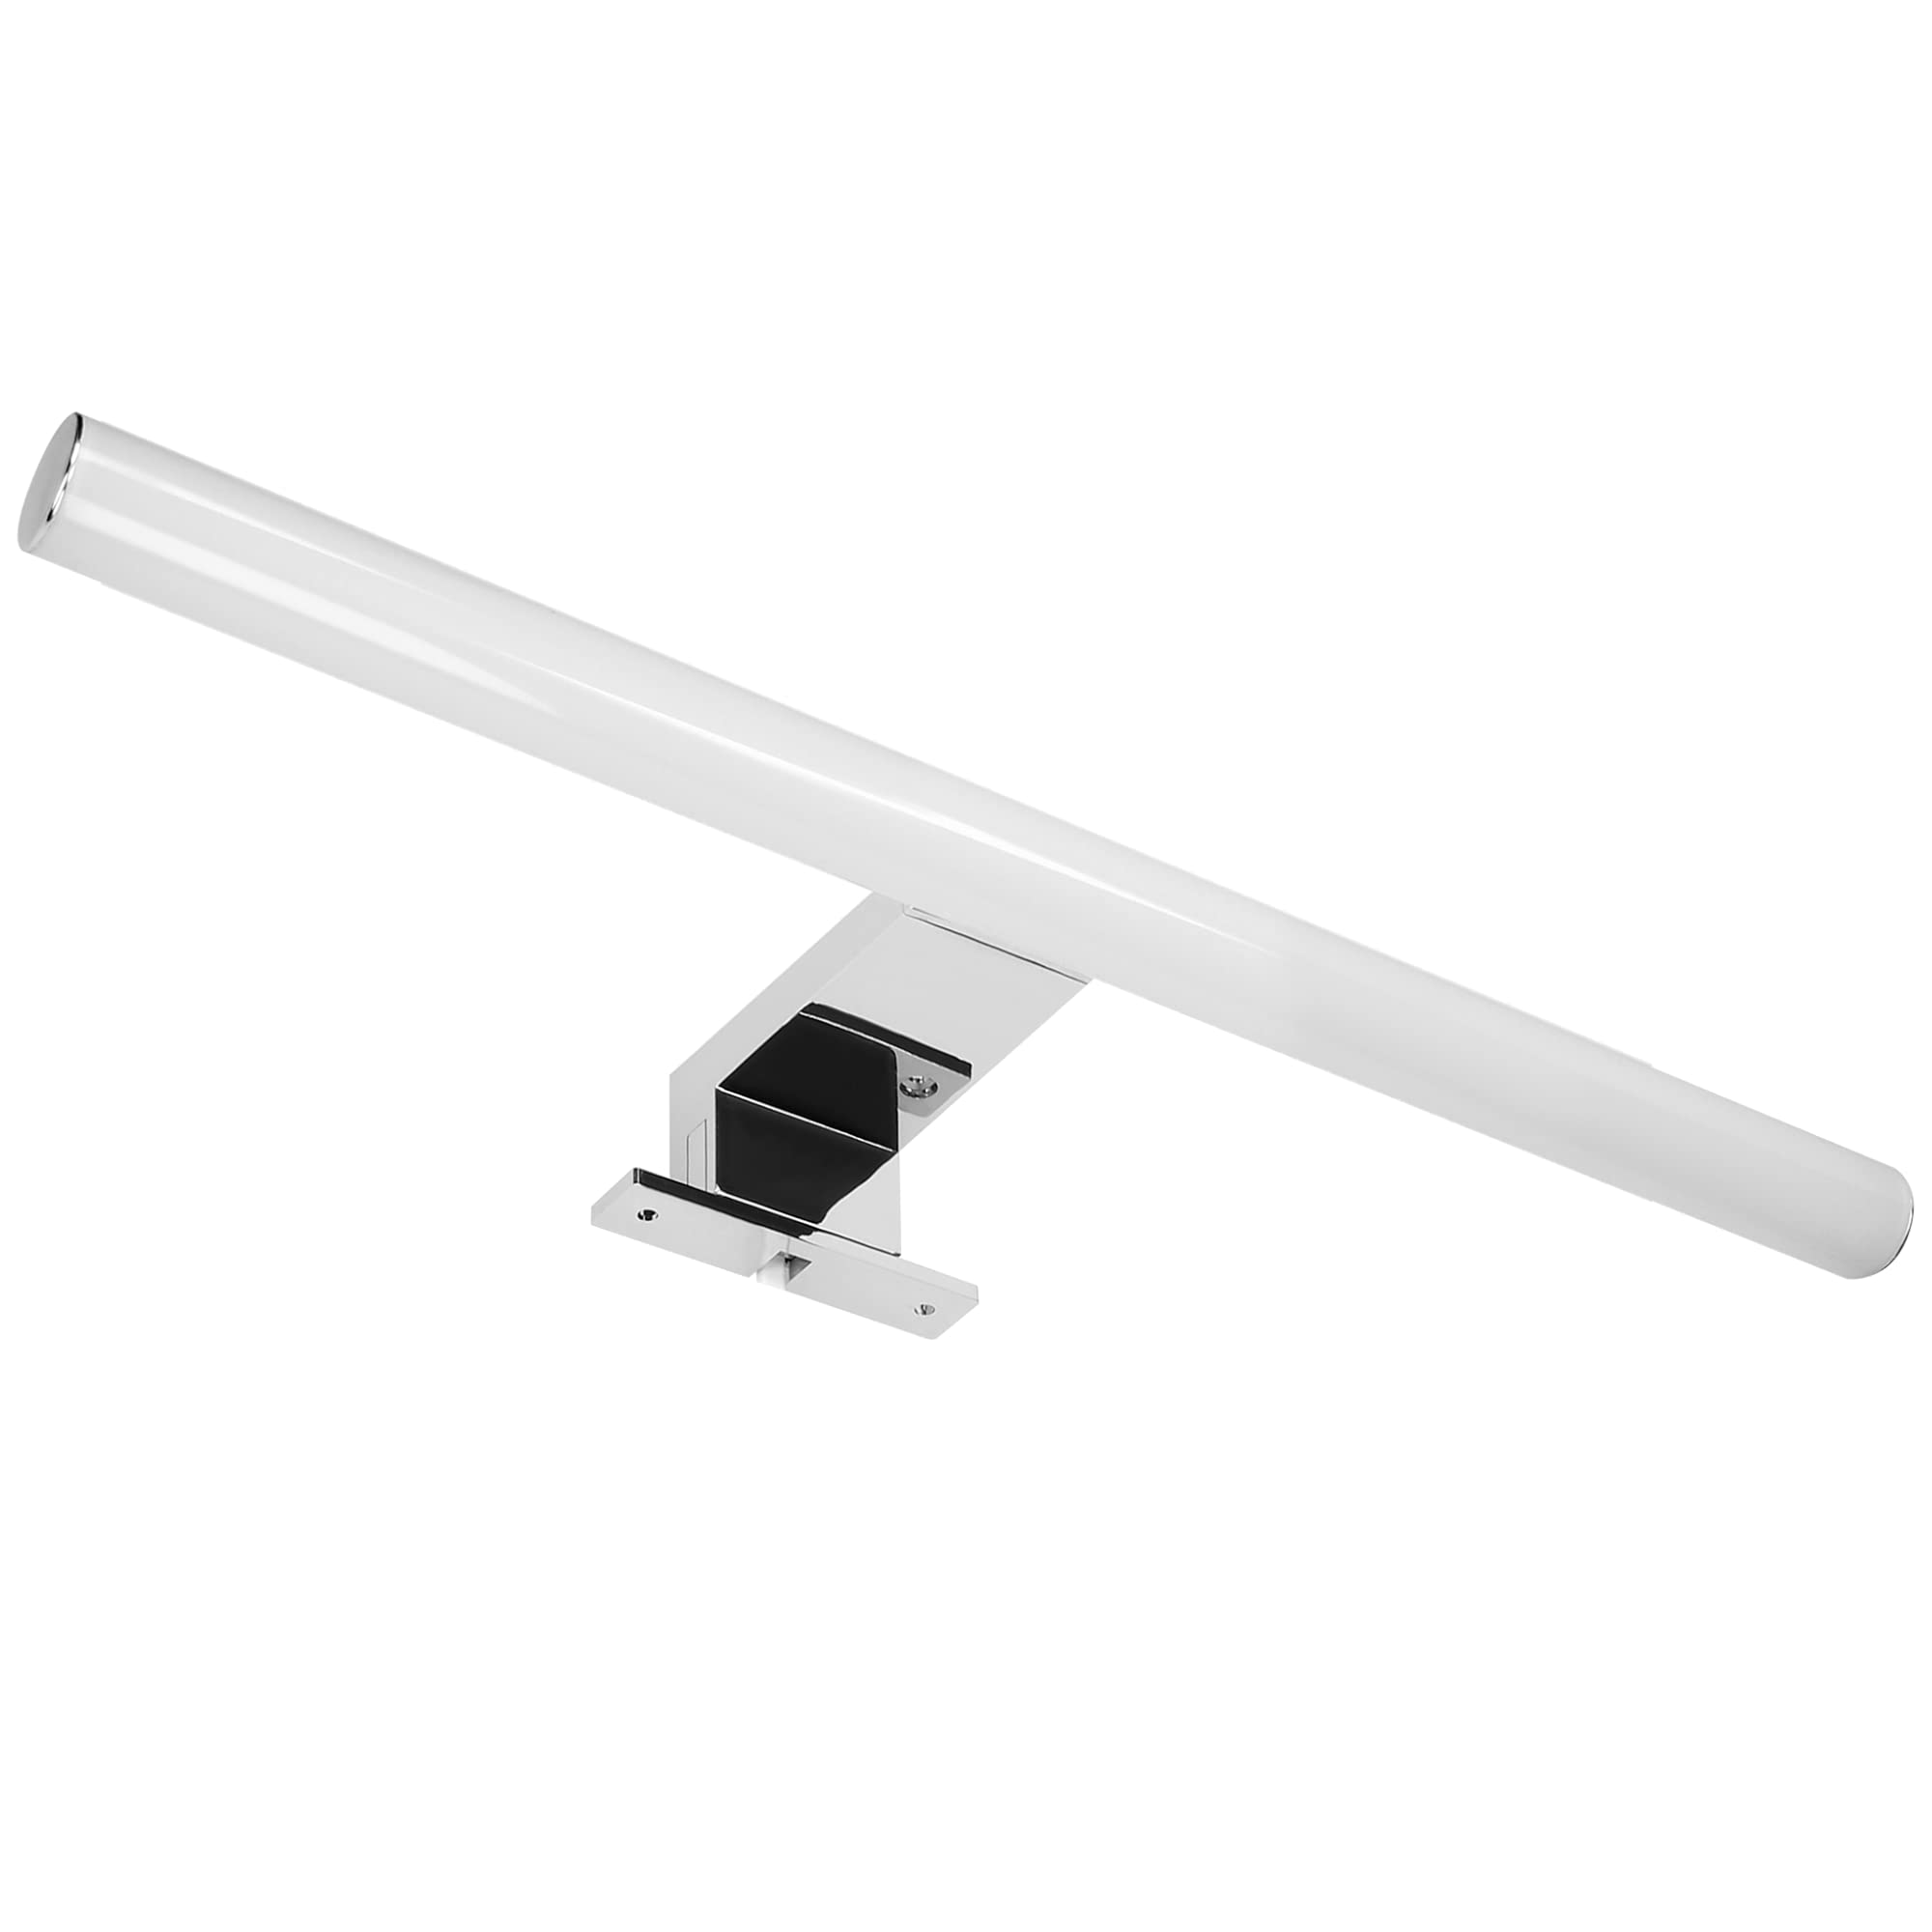 Adviti Peegel Led Spiegelleuchte für den Spiegelschrank IP44 Wasserdicht Silver 9W 4000K 810lm 60cm